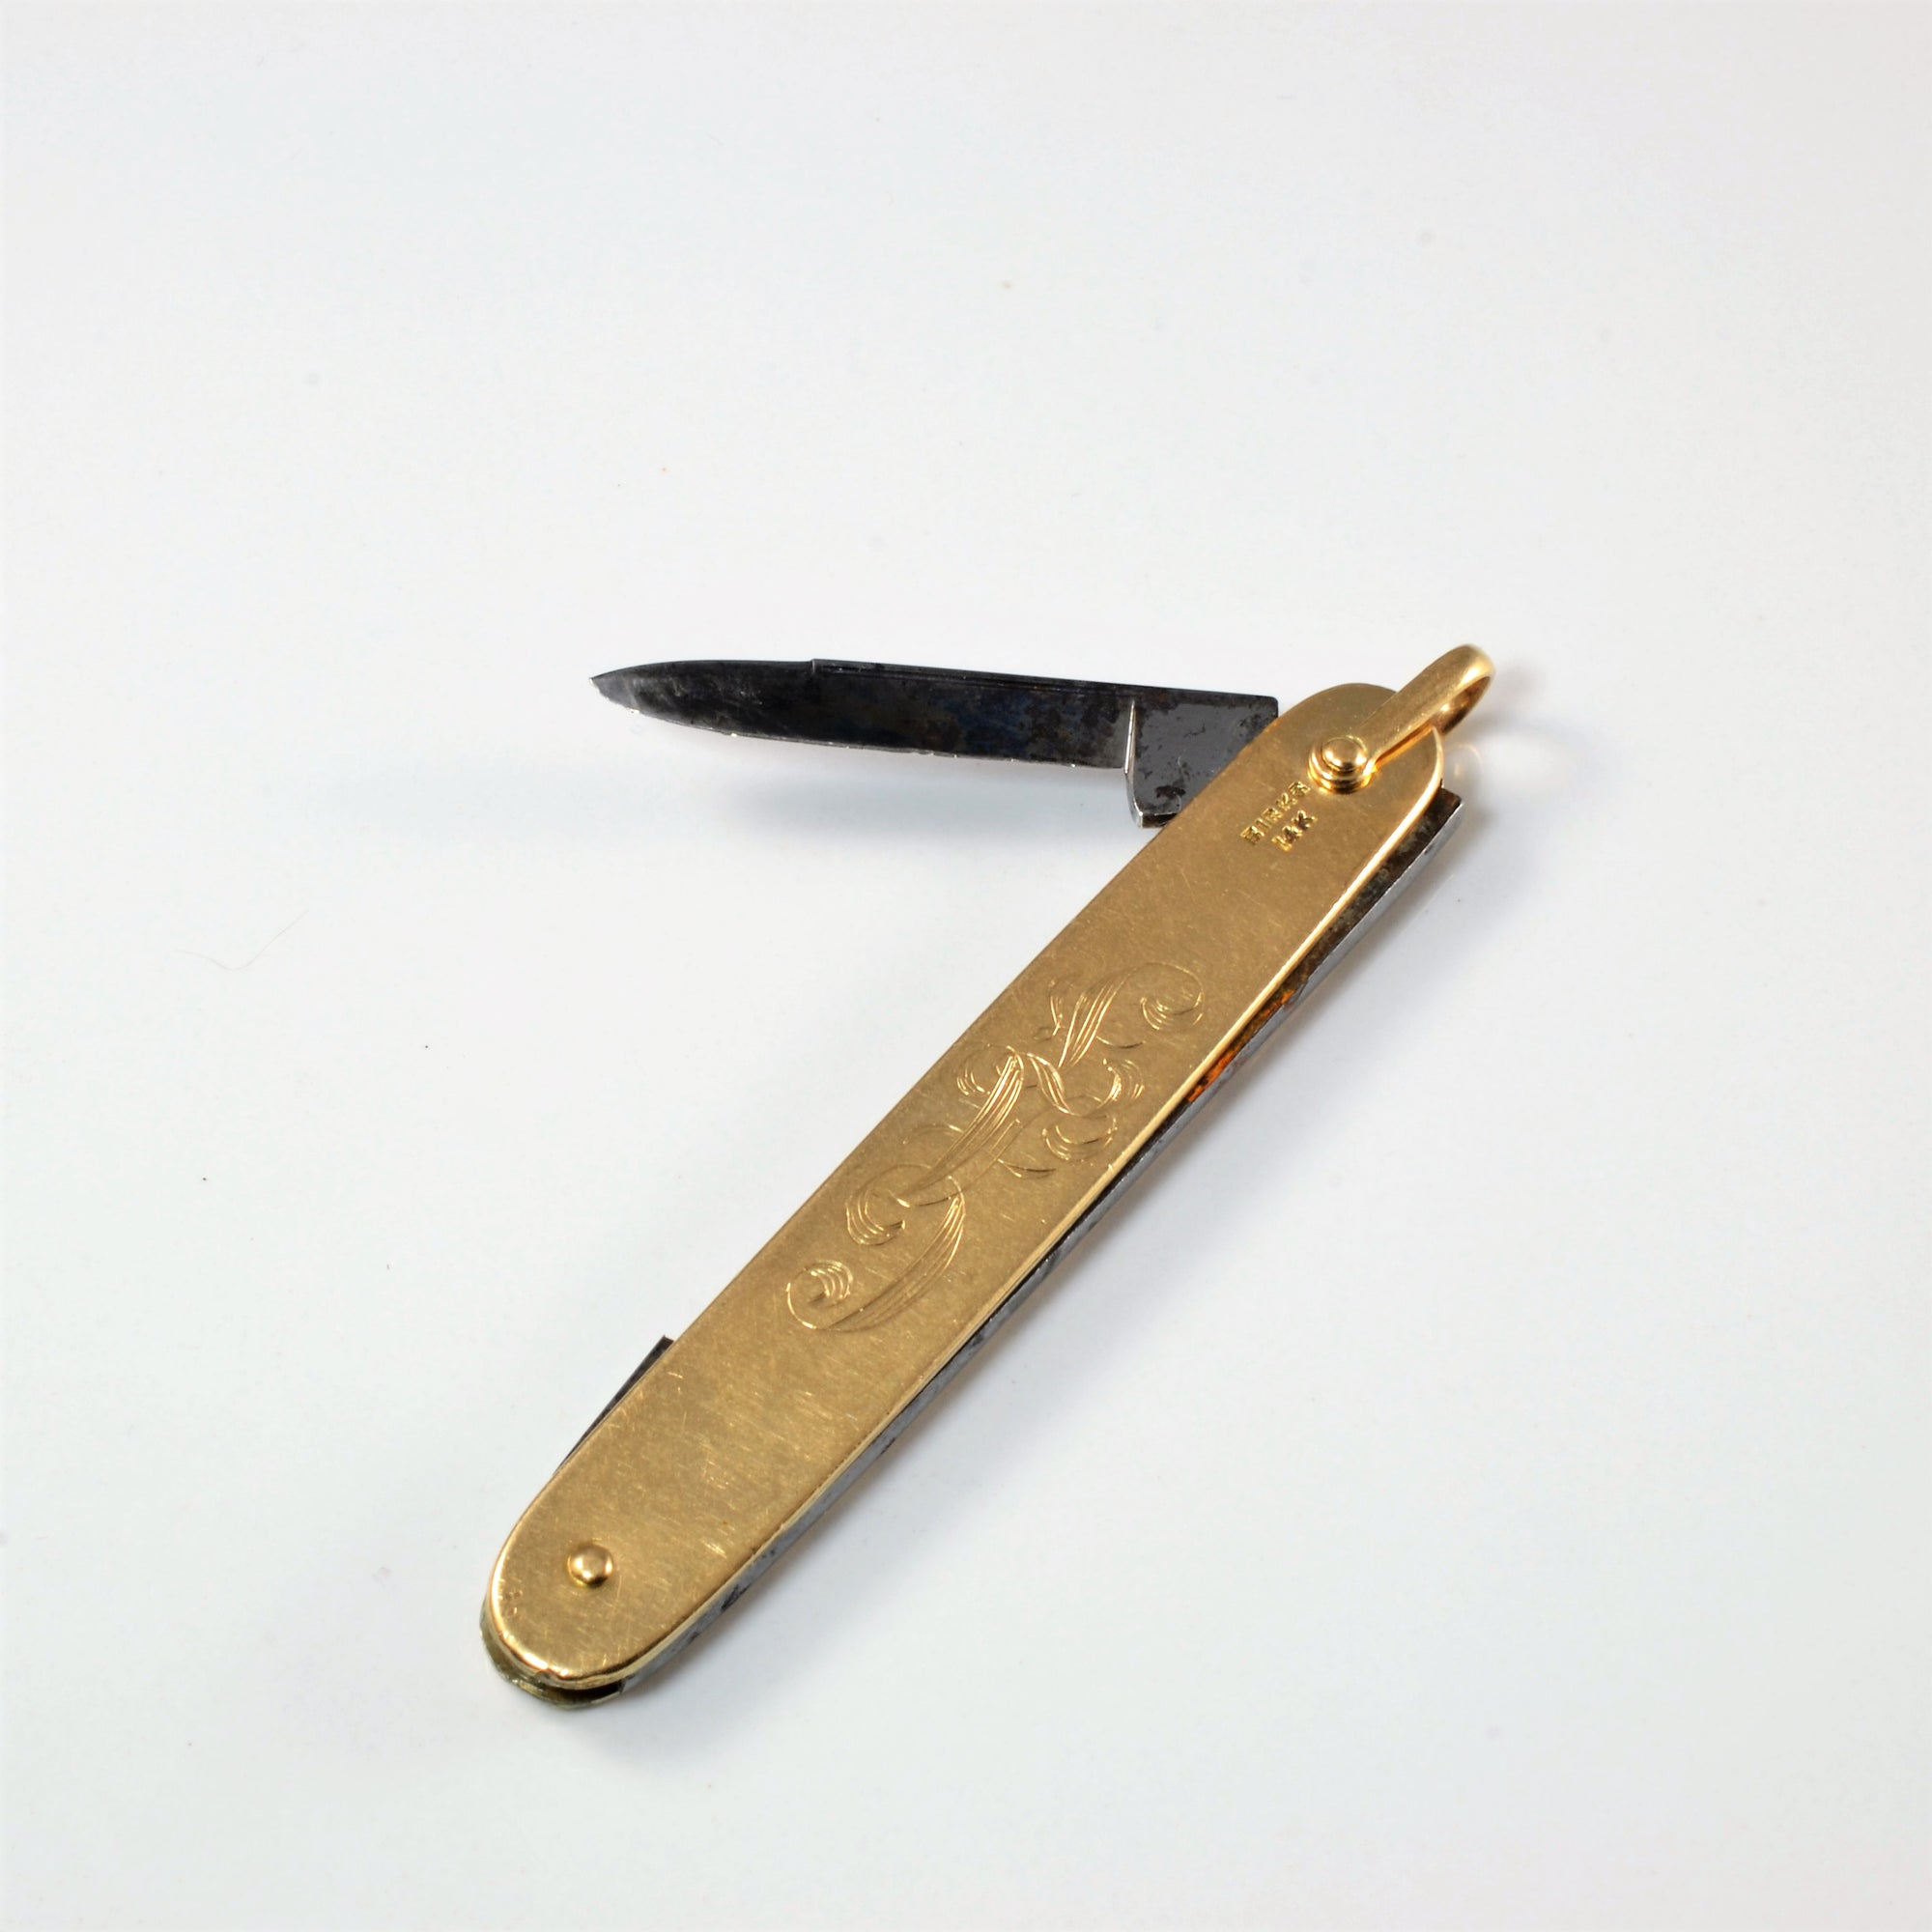 Birks' Gold Pocket Knife